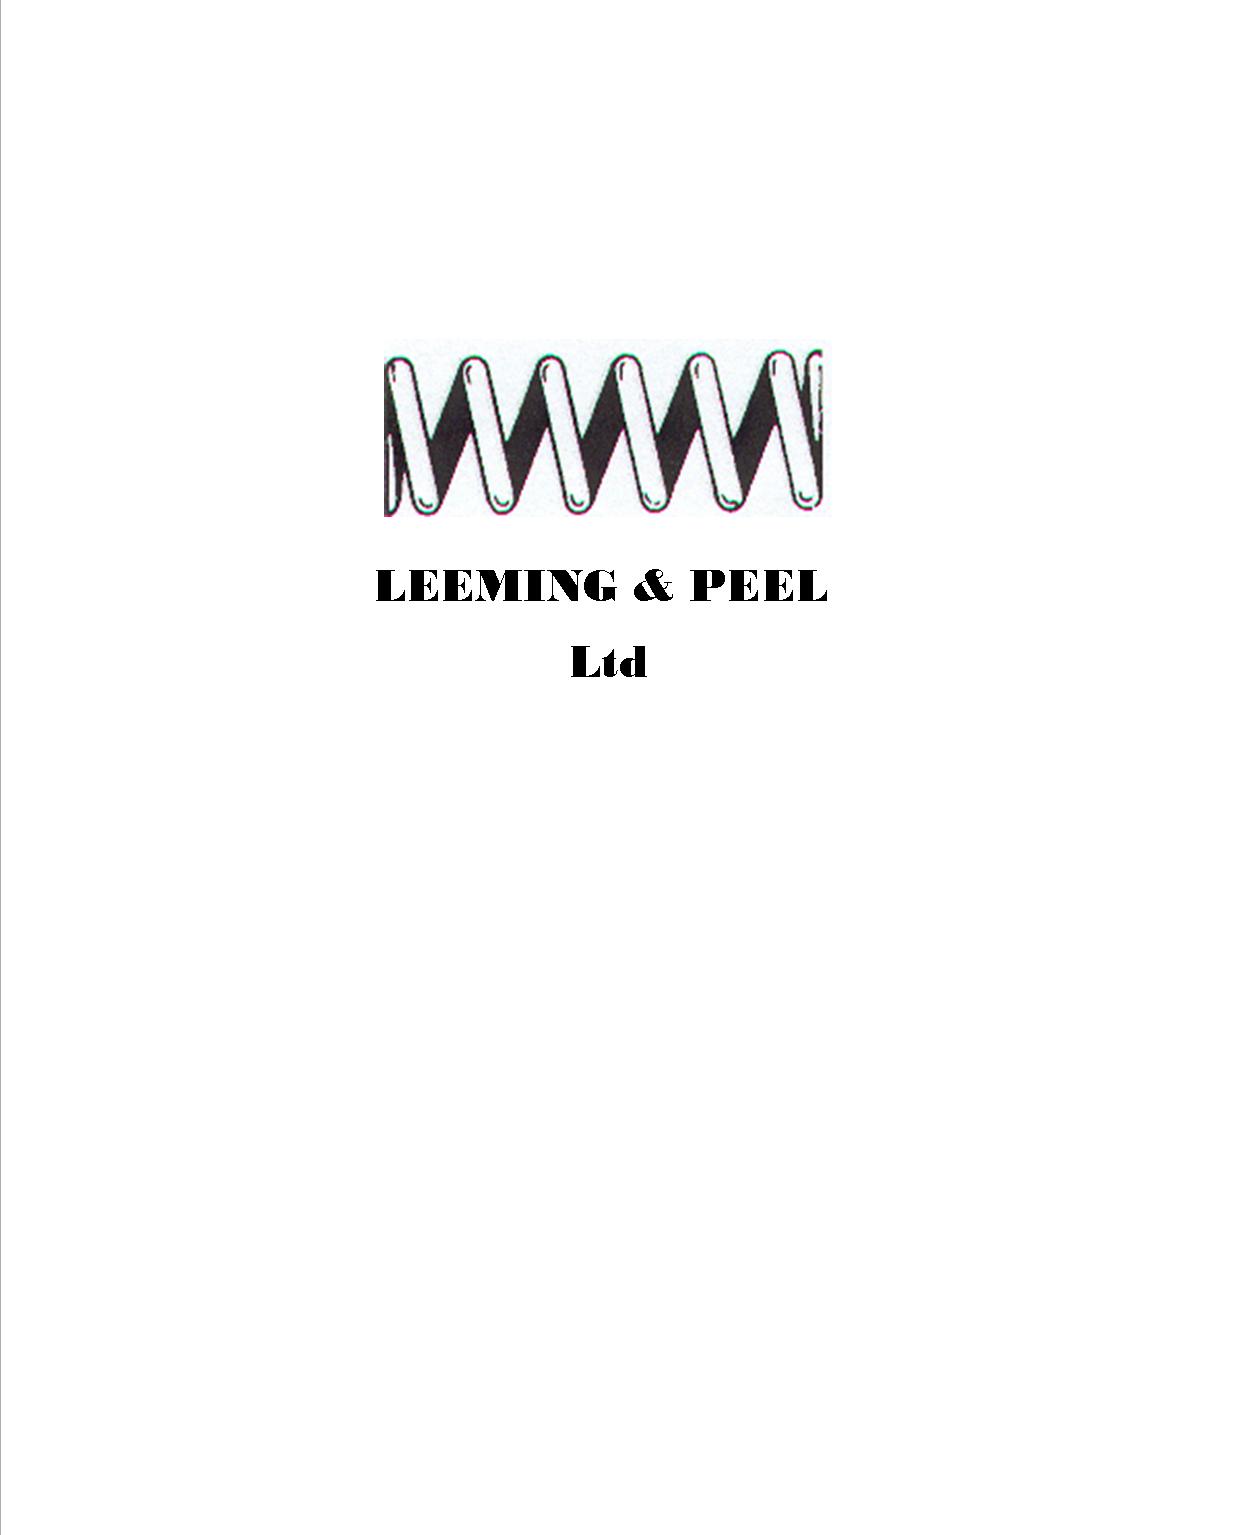 Leeming & Peel Ltd